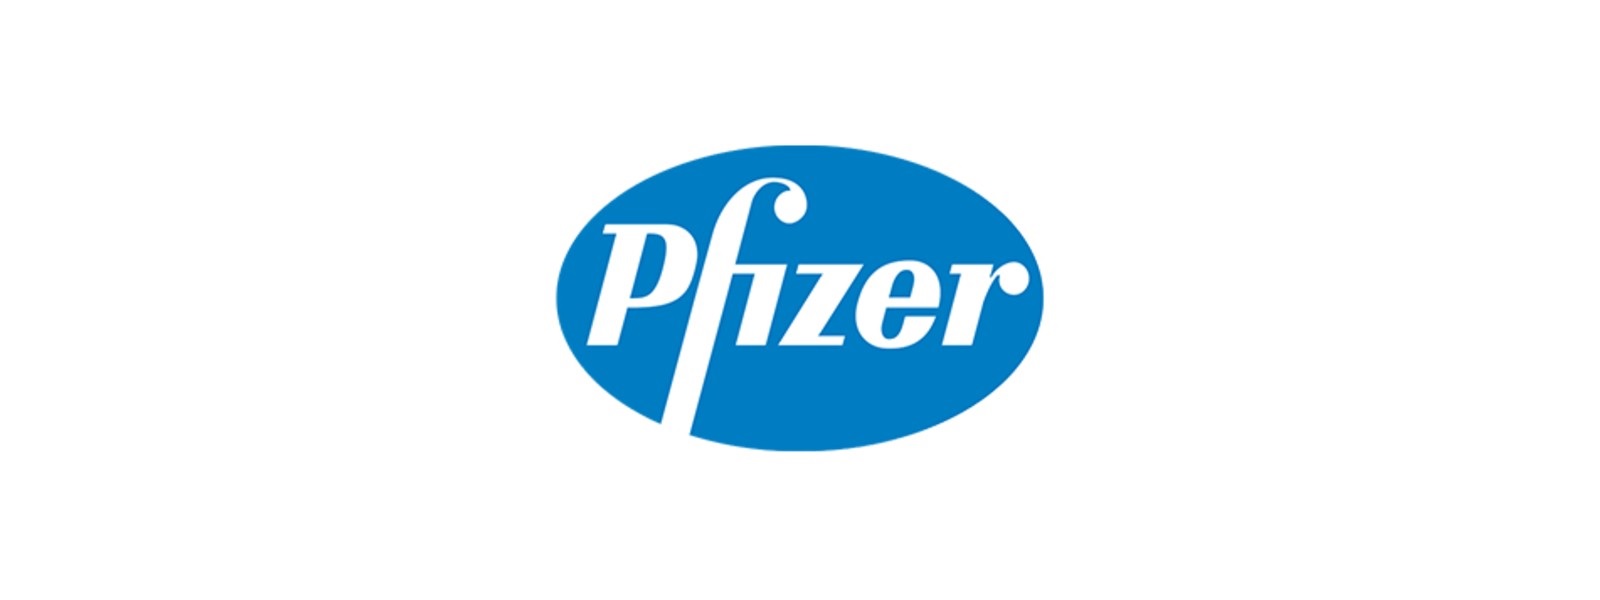 அமெரிக்காவில் 5 – 11 இடைப்பட்ட சிறுவர்களுக்கு Pfizer வழங்க பரிந்துரை